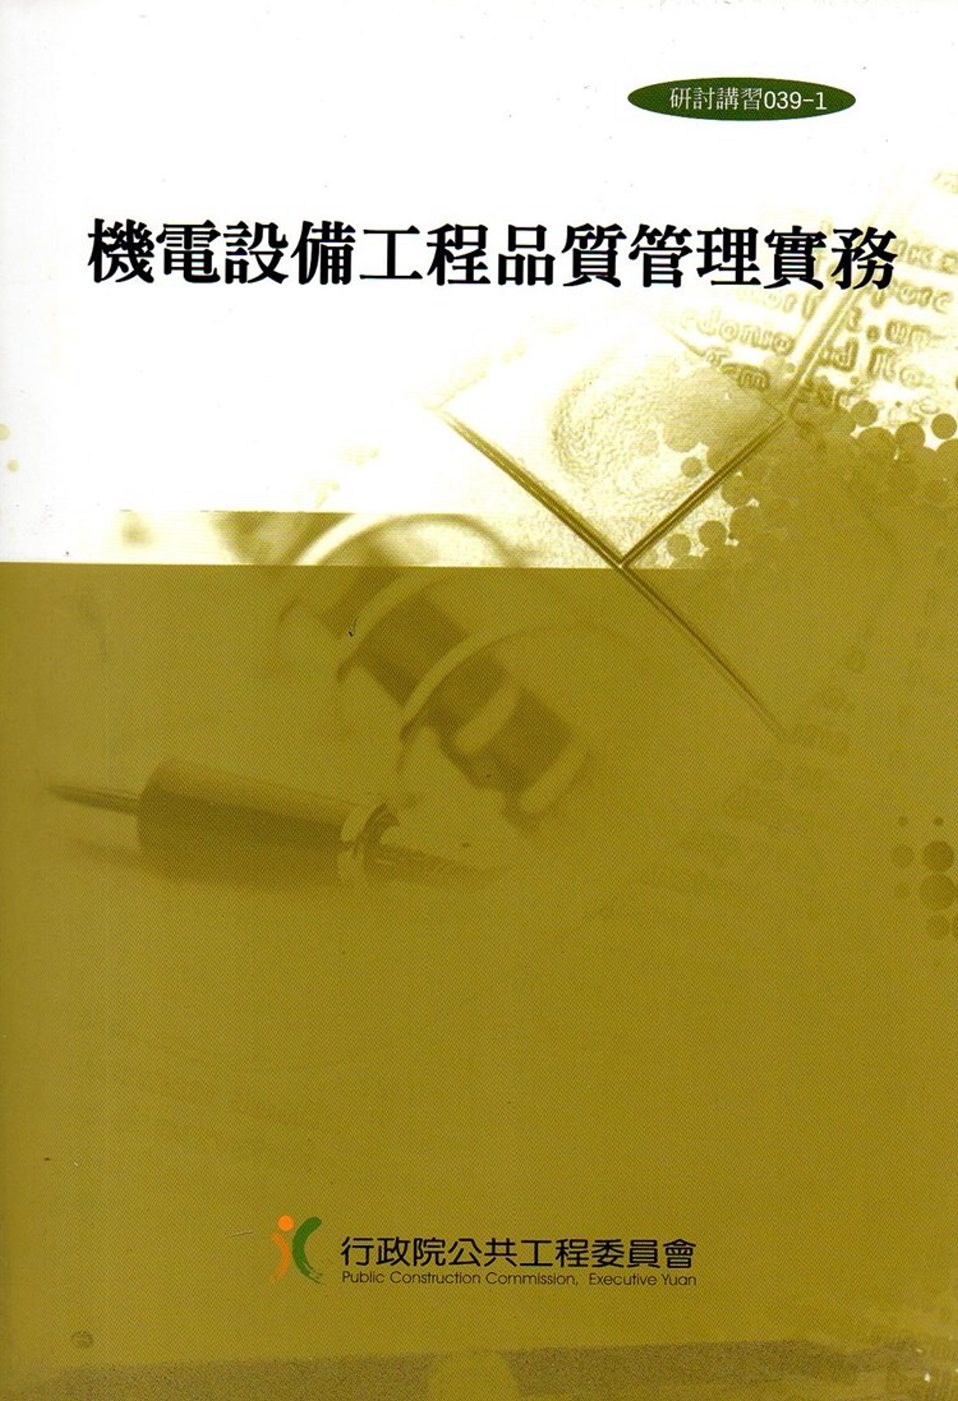 機電設備工程品質管理實務(2版)